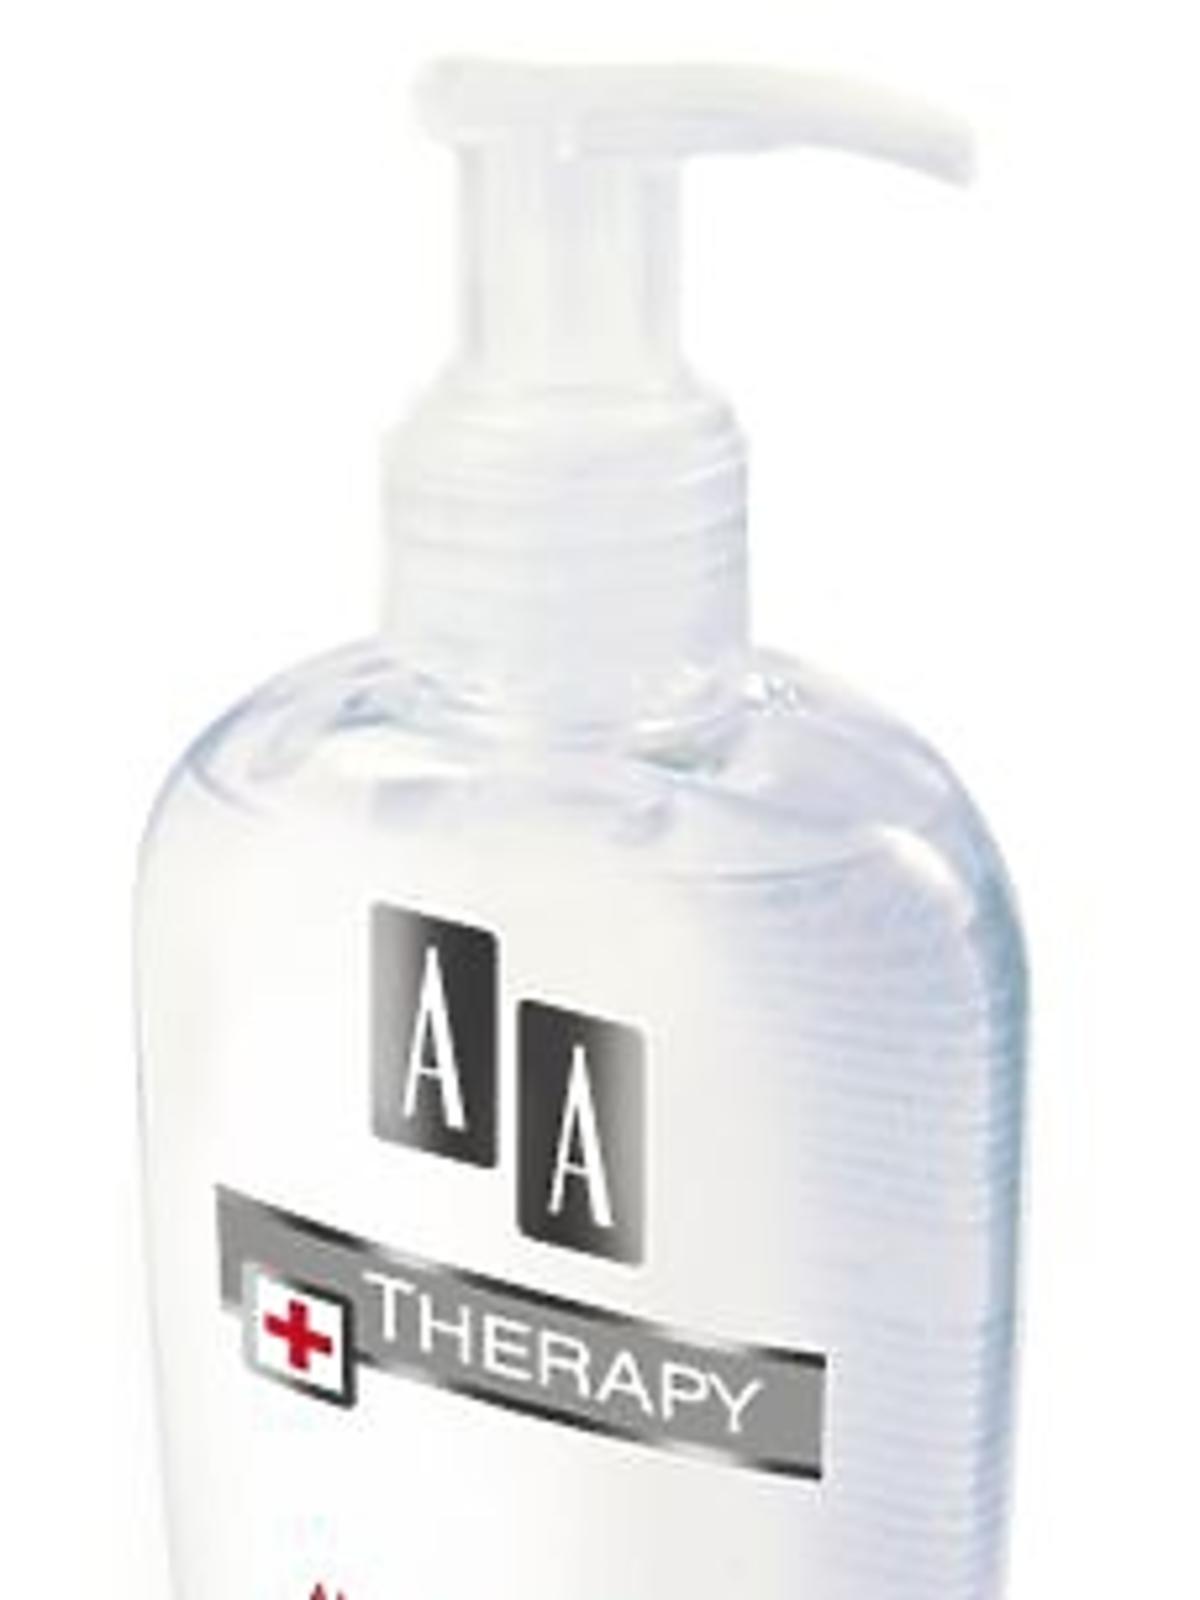 AA Therapy Antybakteryjny żel do mycia rąk.jpg